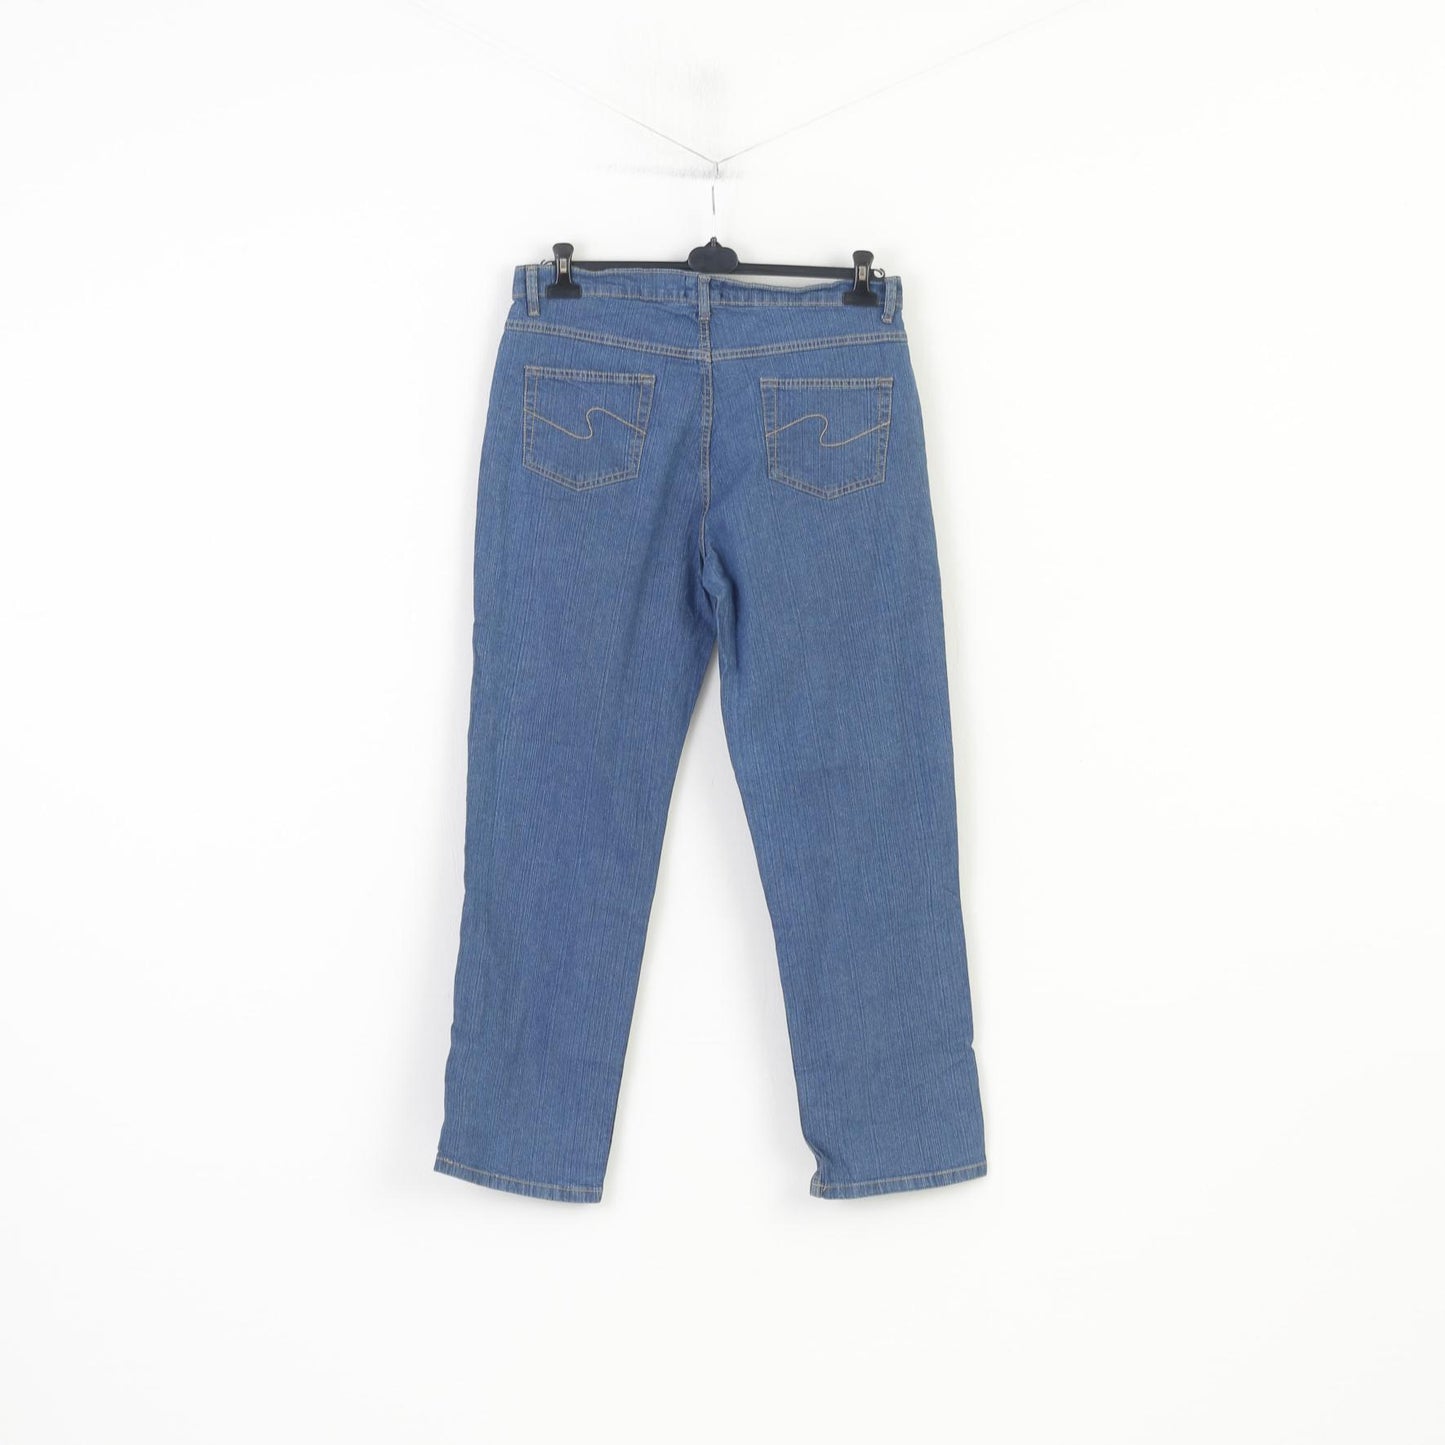 Encadee Femme 46 Pantalon Denim Jeans Bleu Coton Vintage Pantalon Classique 